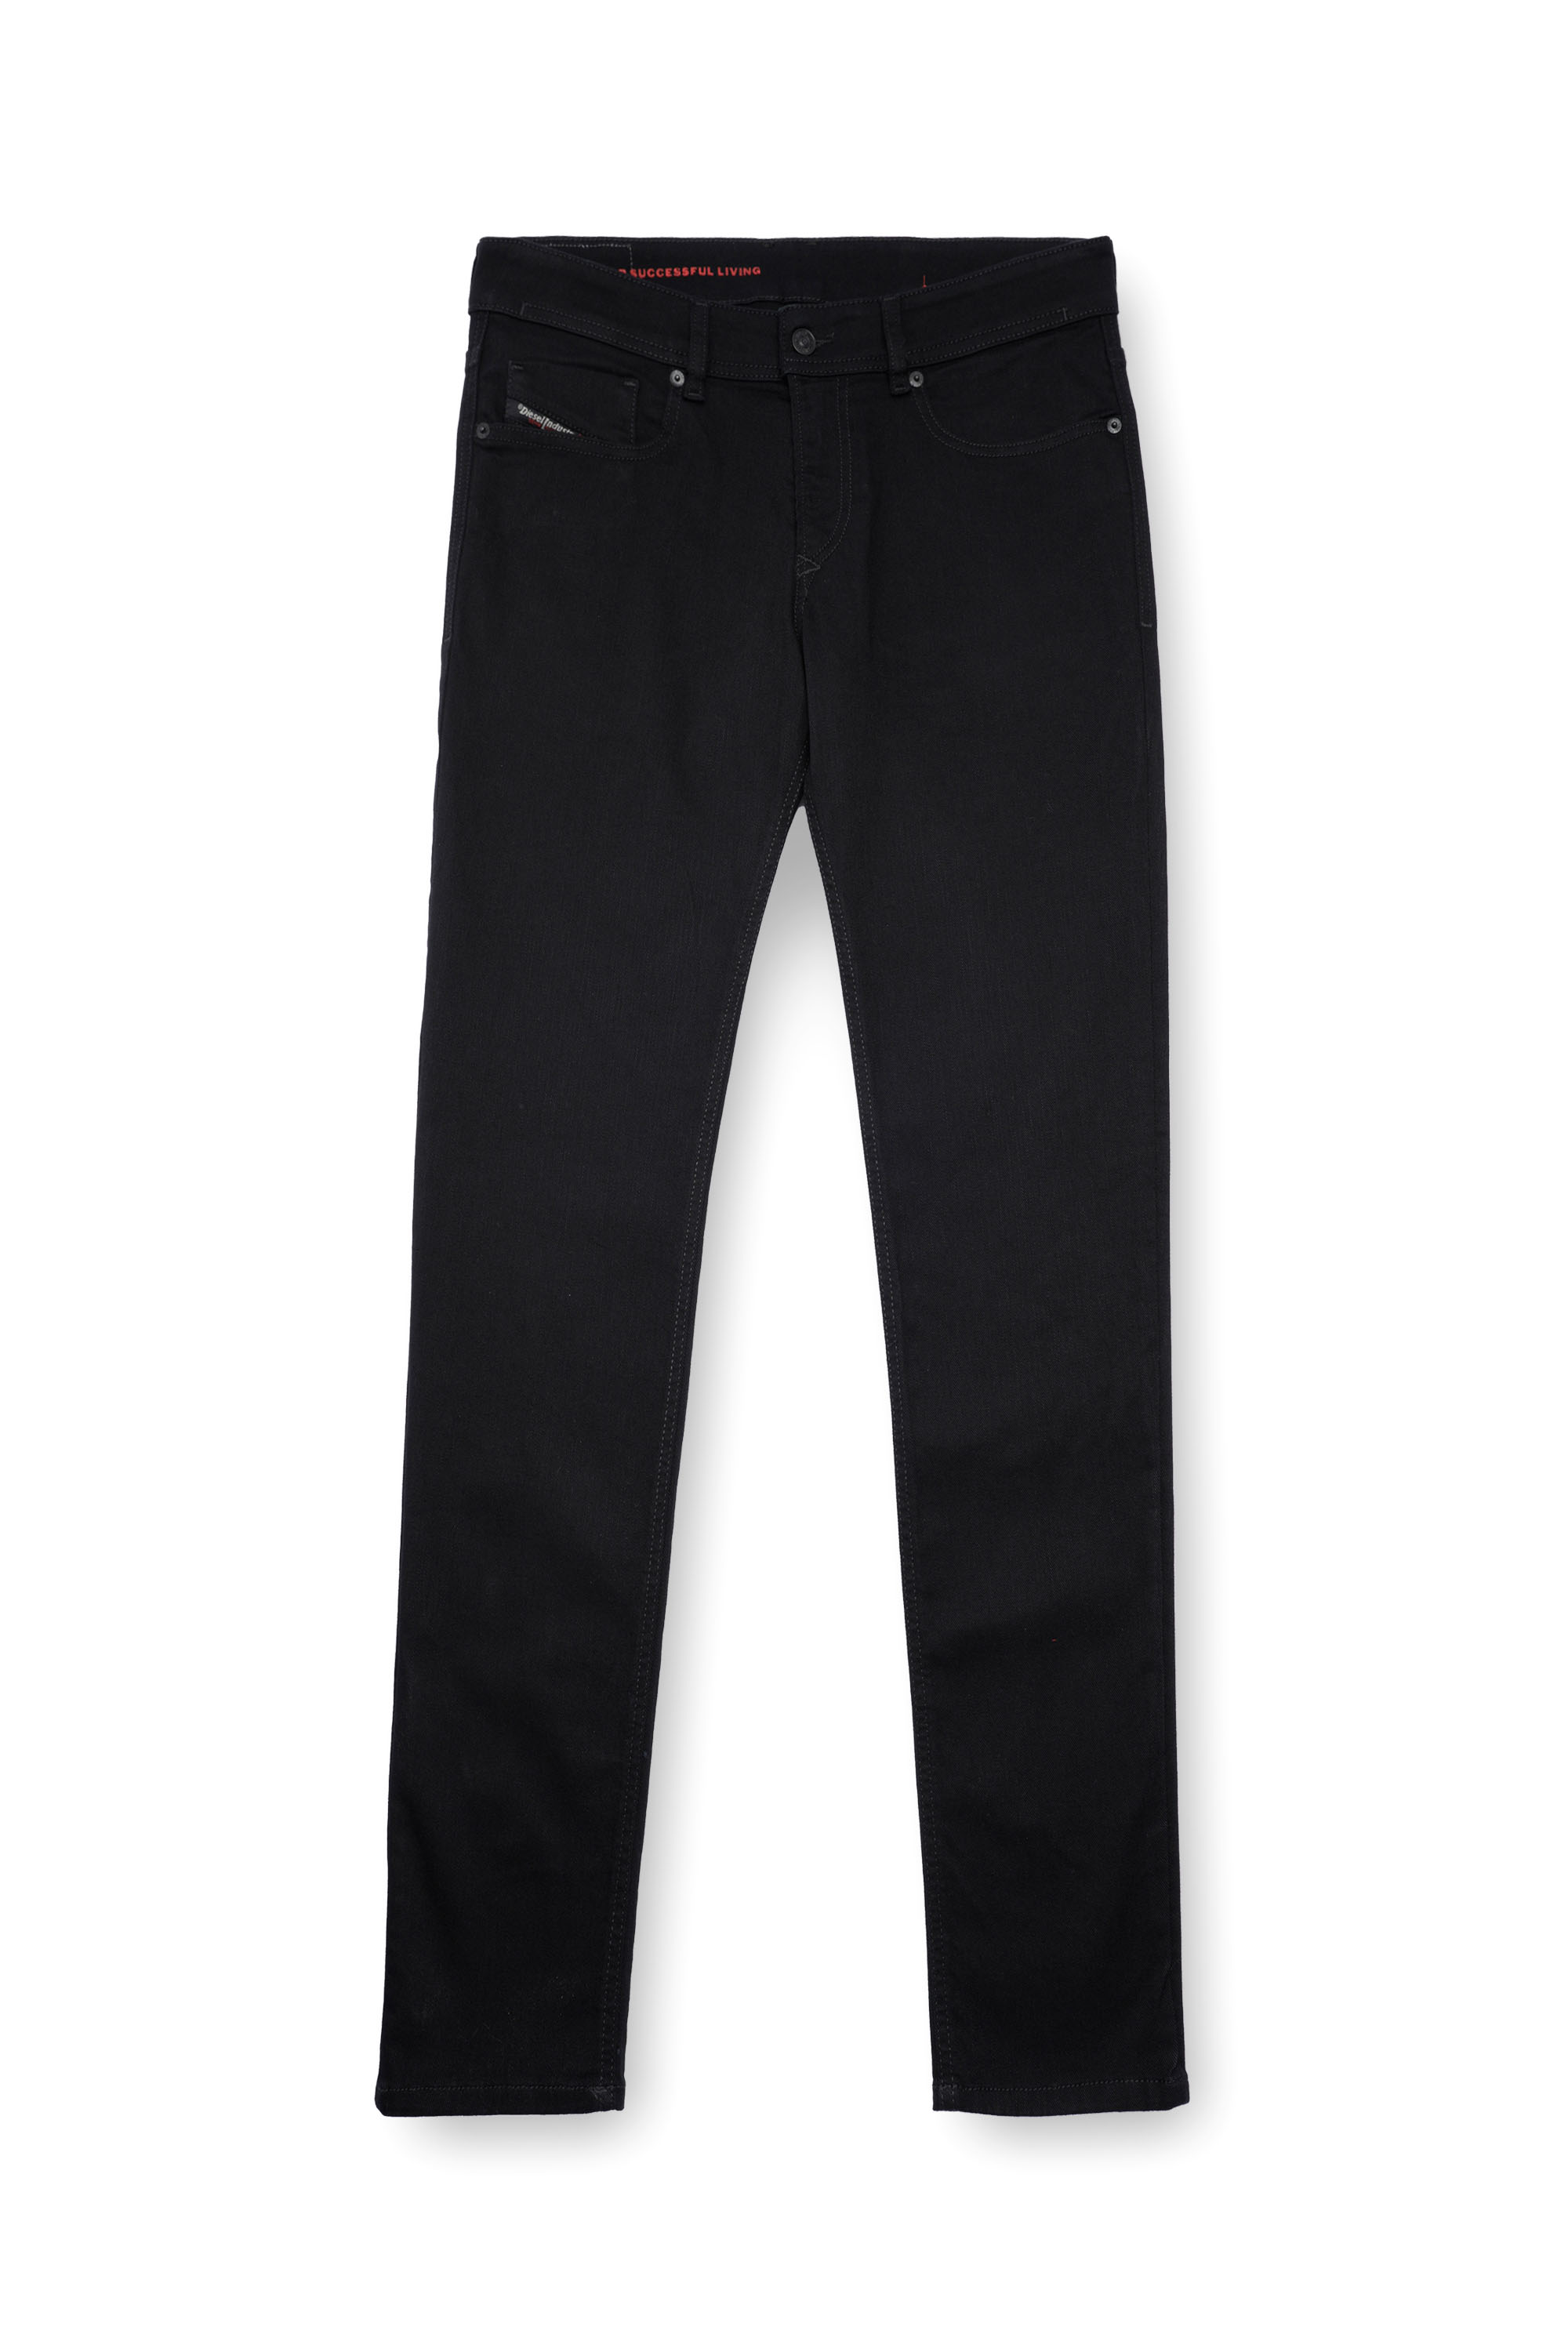 Diesel - Skinny Jeans 1979 Sleenker 09C51, Black/Dark grey - Image 5